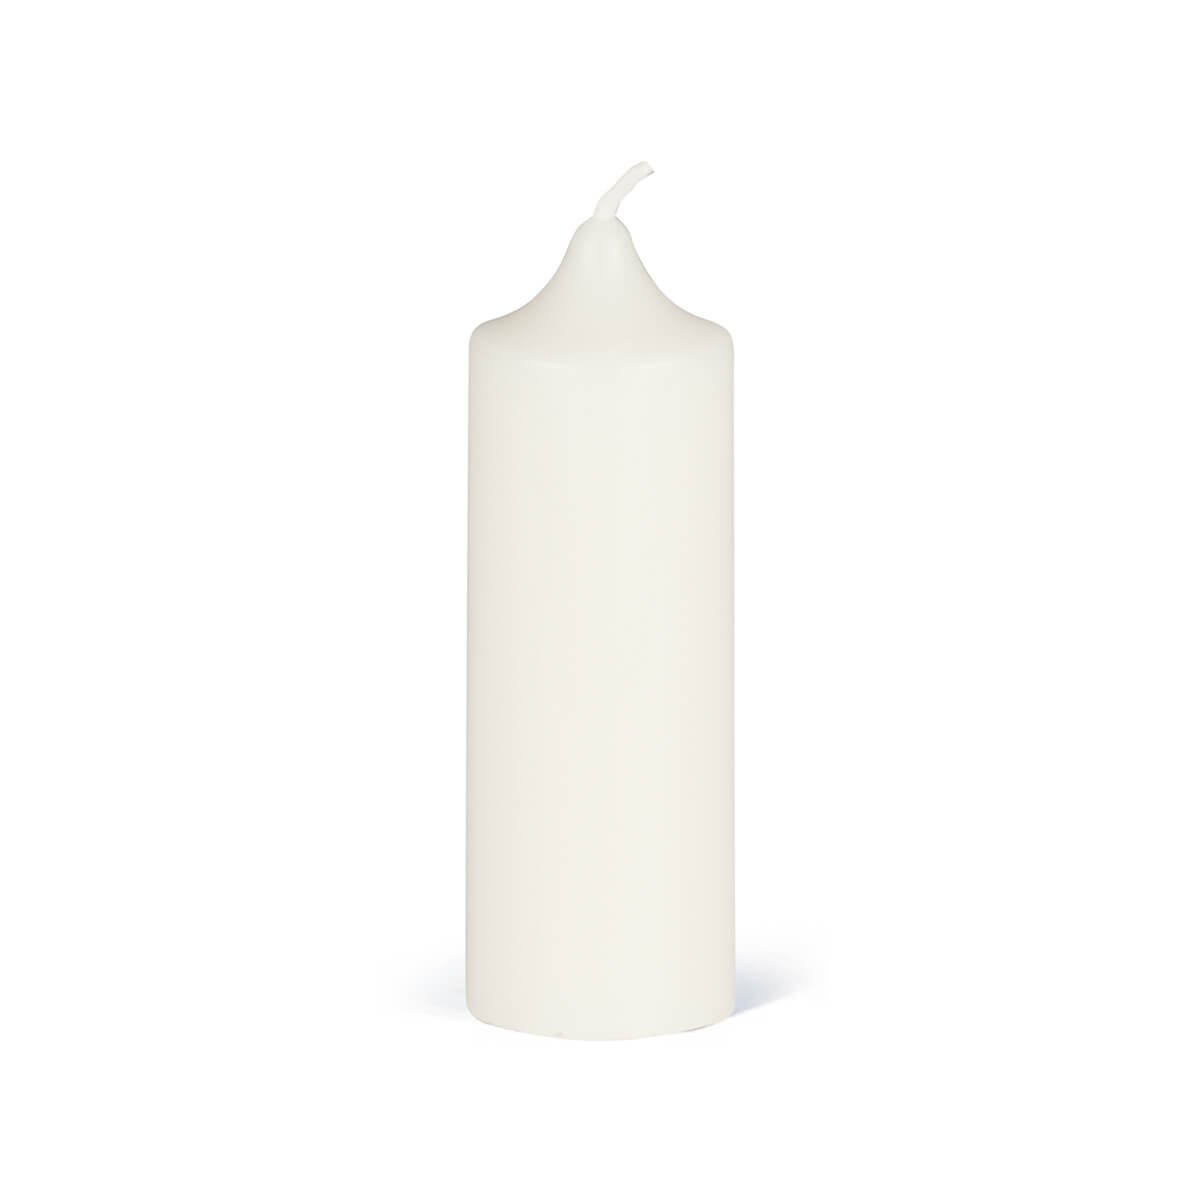 Giessform für Kerzen - Zylinder 123/40 mm